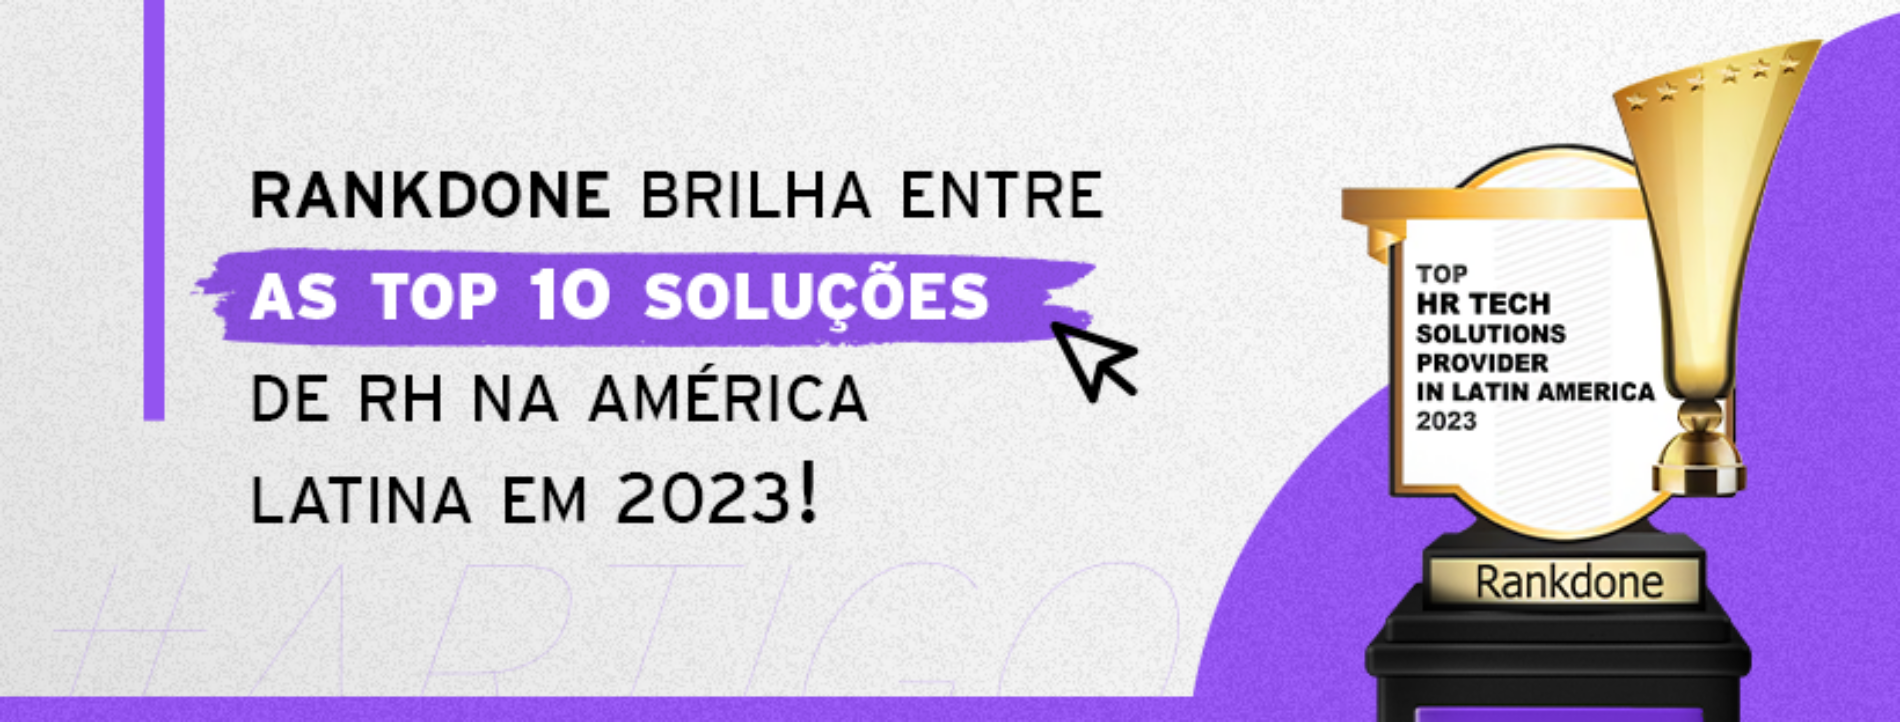 Rankdone brilha entre as Top 10 soluções de RH na América Latina em 2023.